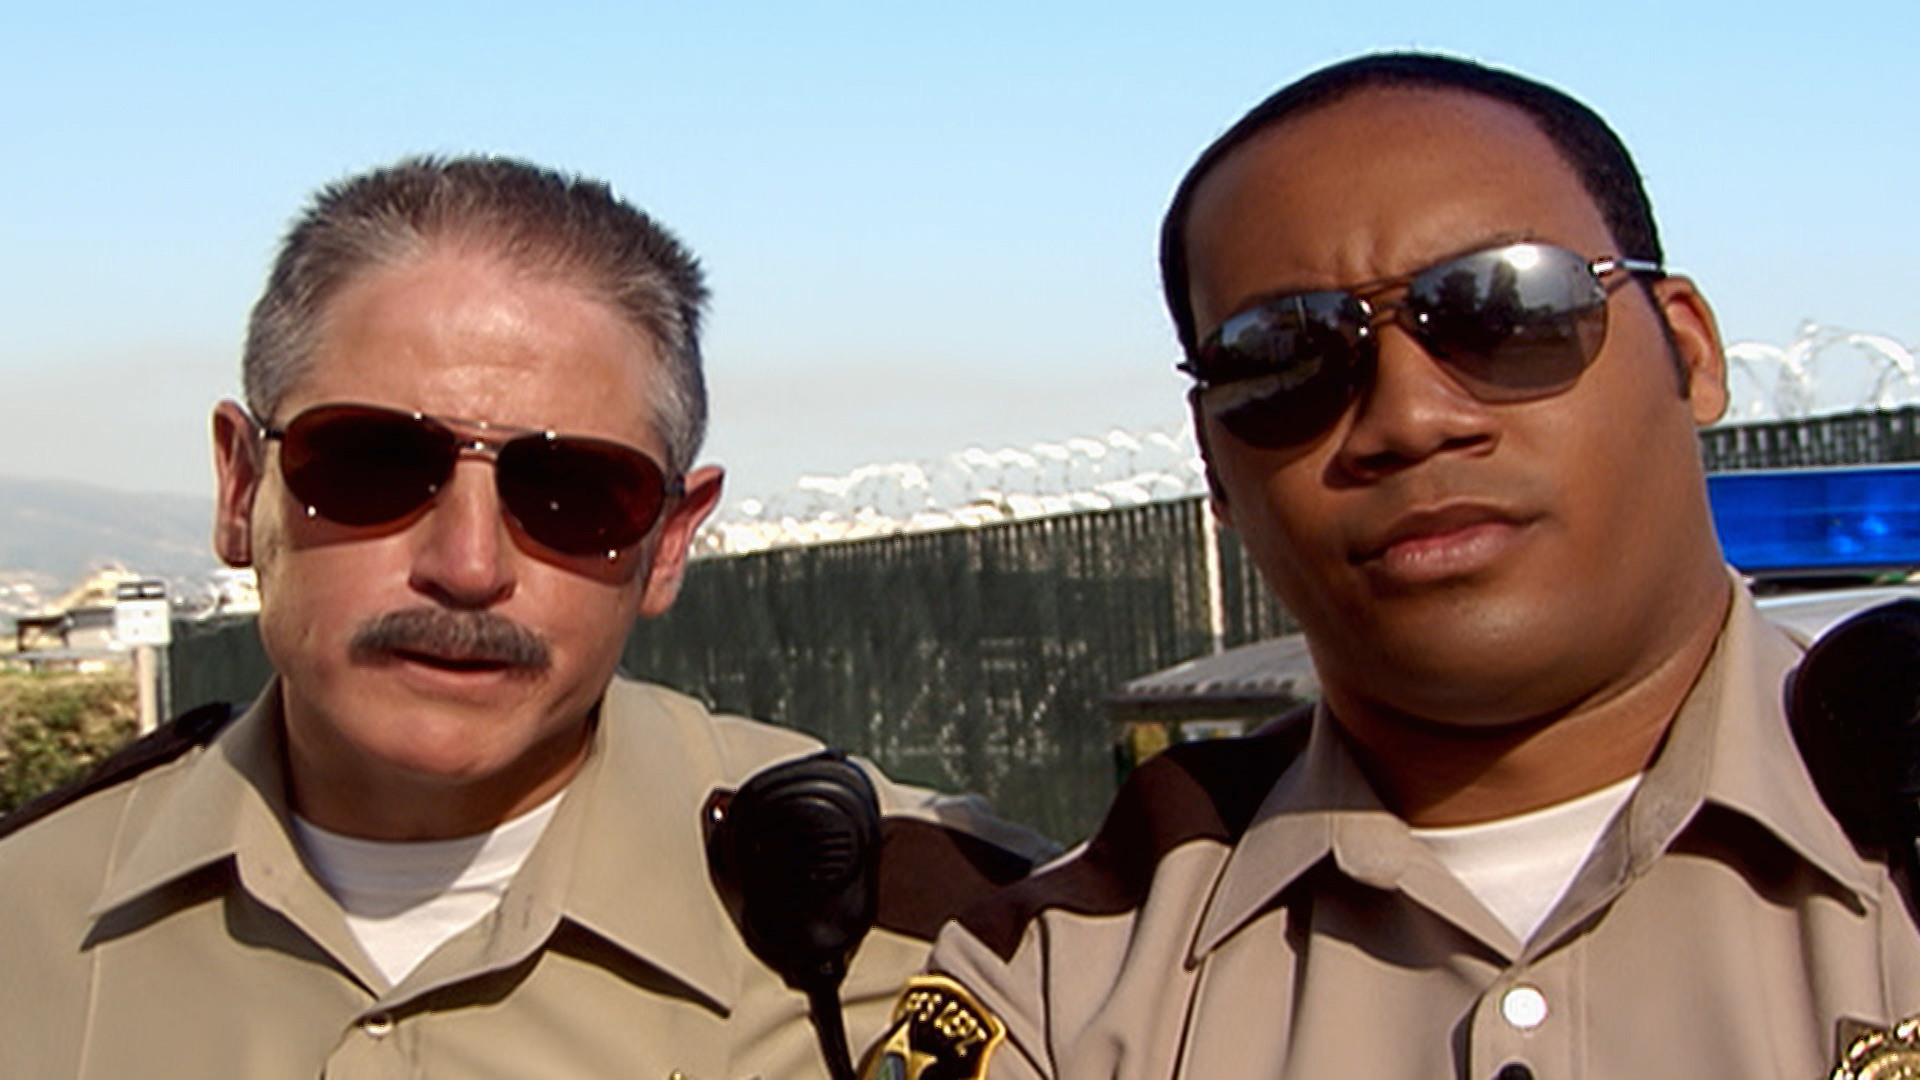 Watch Reno 911! Online - Stream Full Episodes